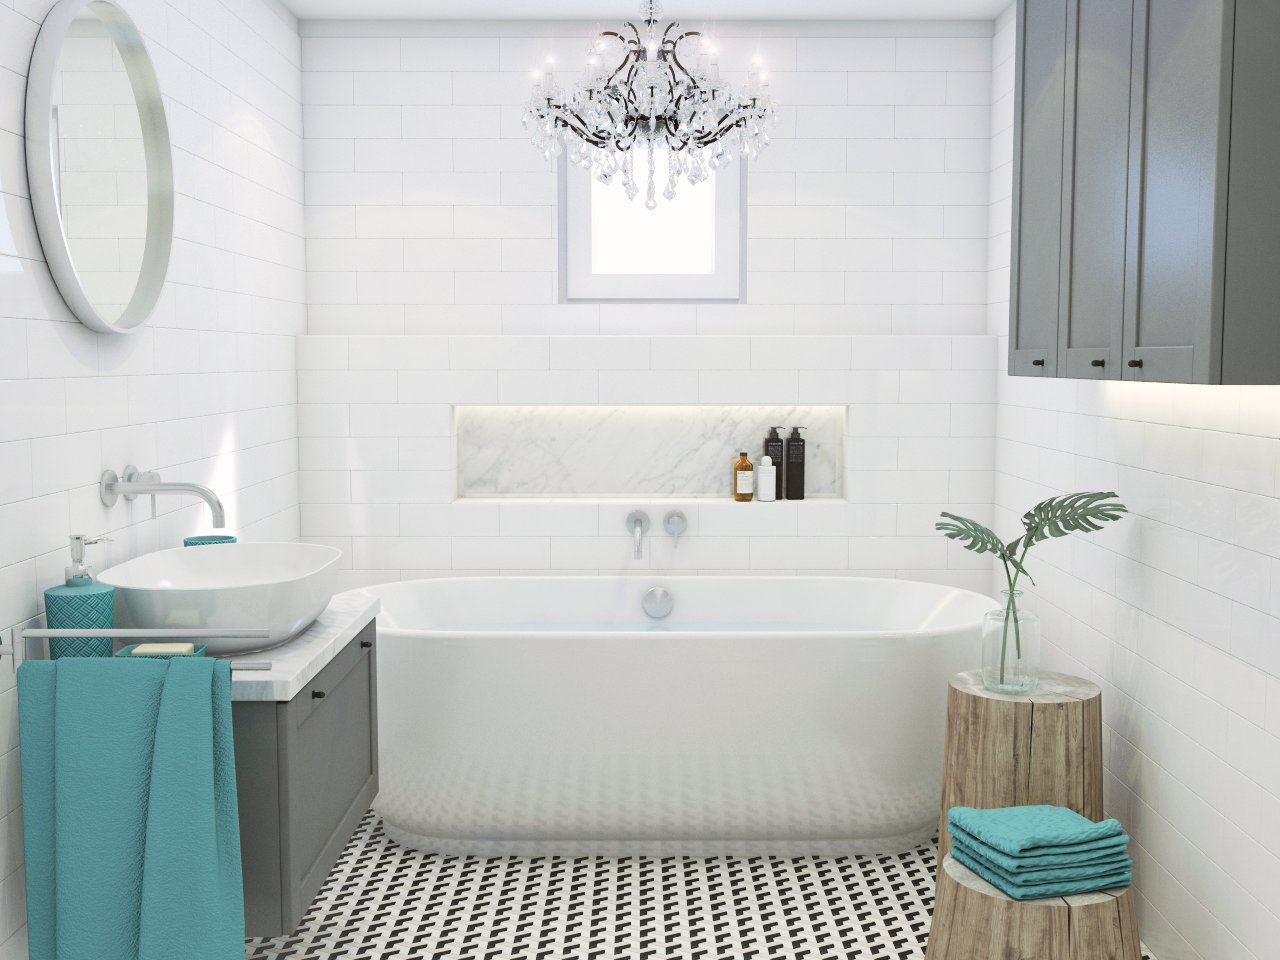 Biela dekorovaná kúpeľňa s oknom, voľne stojacou vaňou a skrinkami osvetlená luxusným lustrom